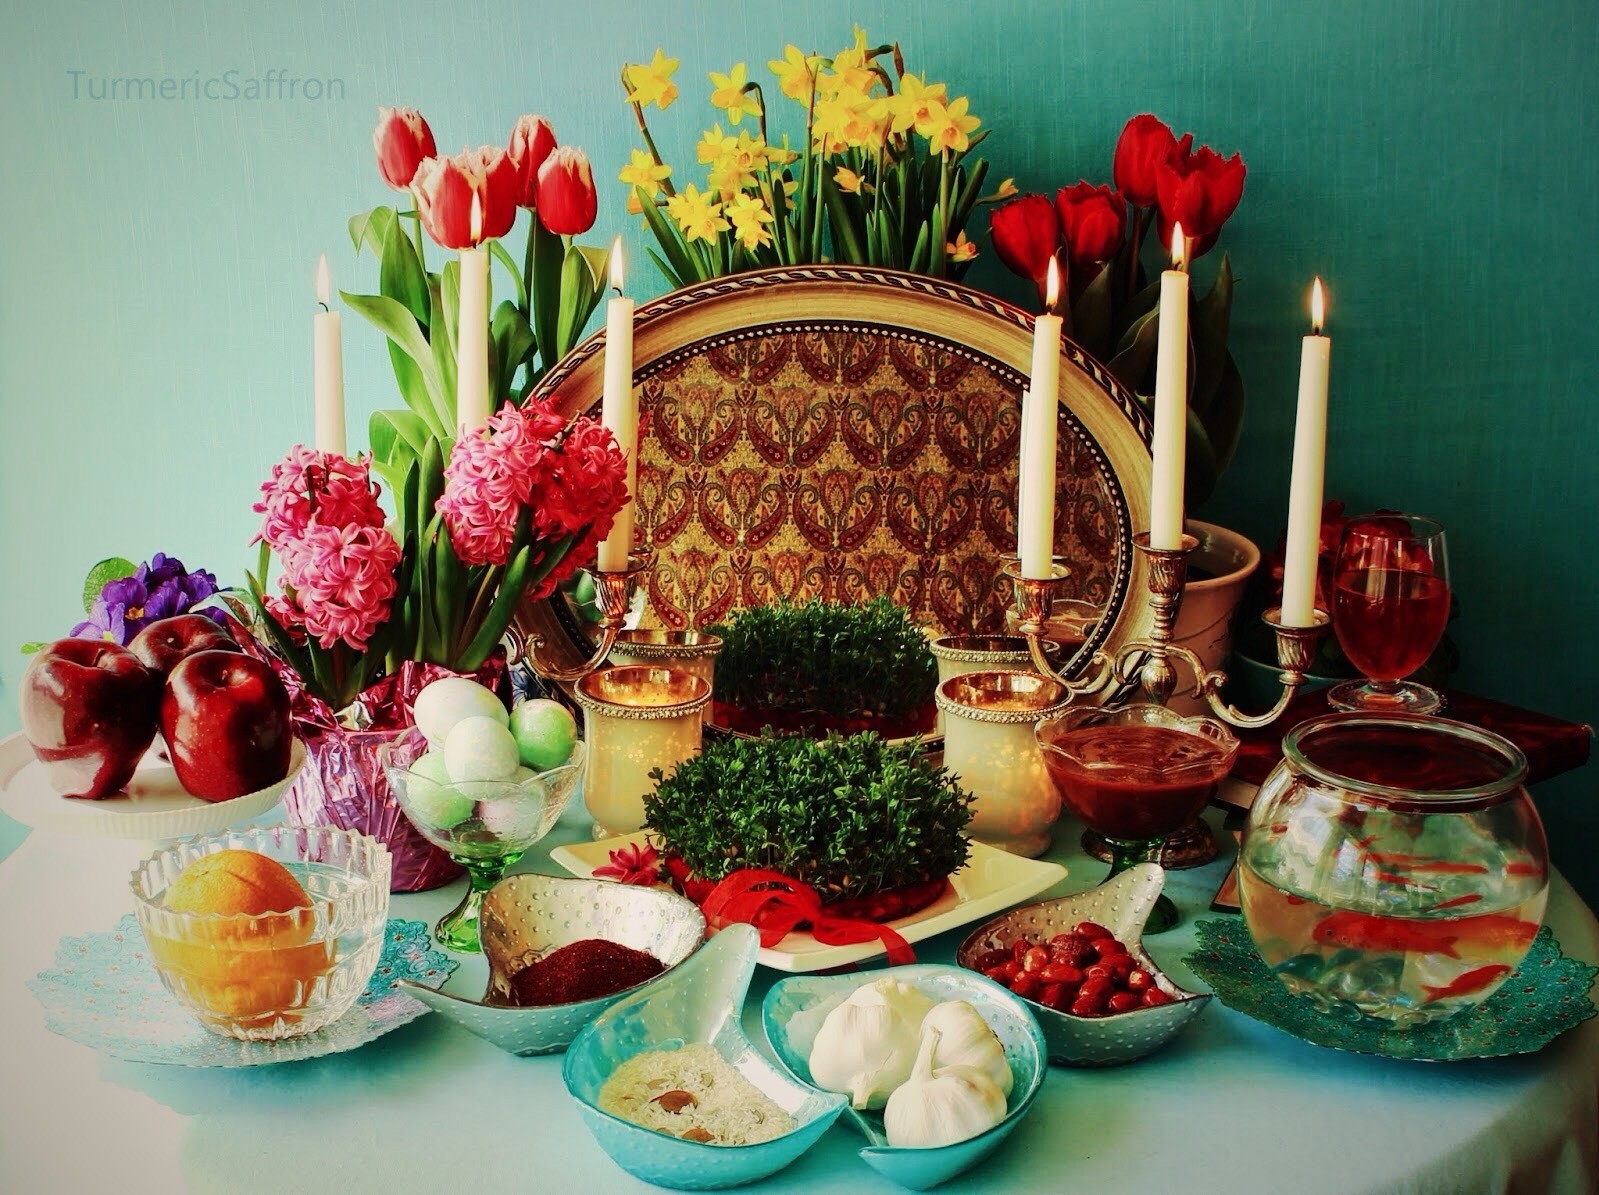 春分=伊朗新年?跟着视频玩转特别的诺鲁孜节